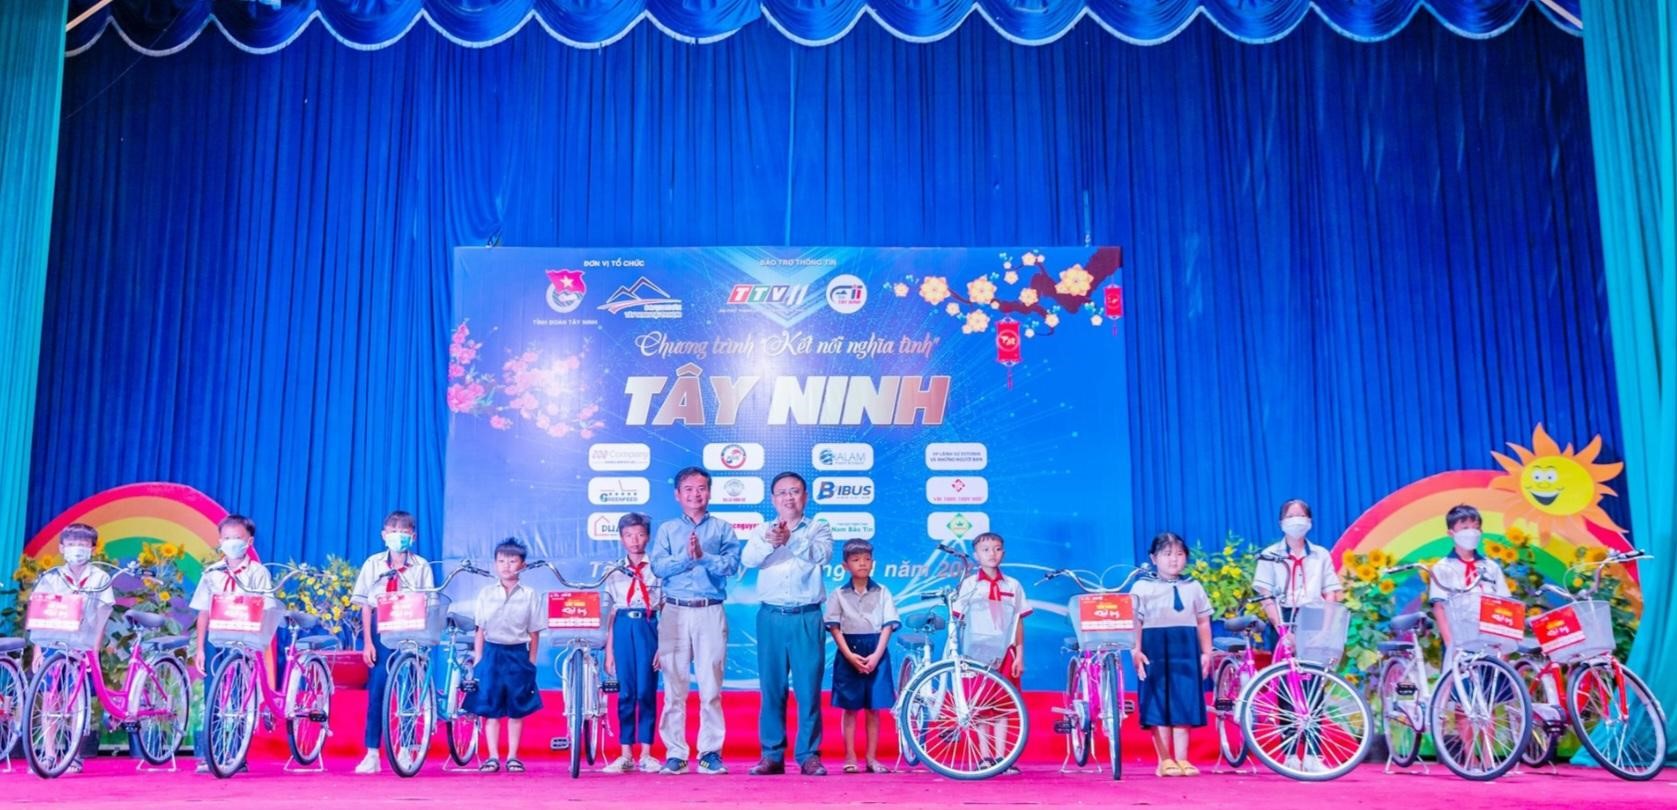 Đại diện CLB Doanh nhân nhân Tây Ninh tại TP Hồ Chí Minh trao xe đạp và quà cho học sinh Tây Ninh